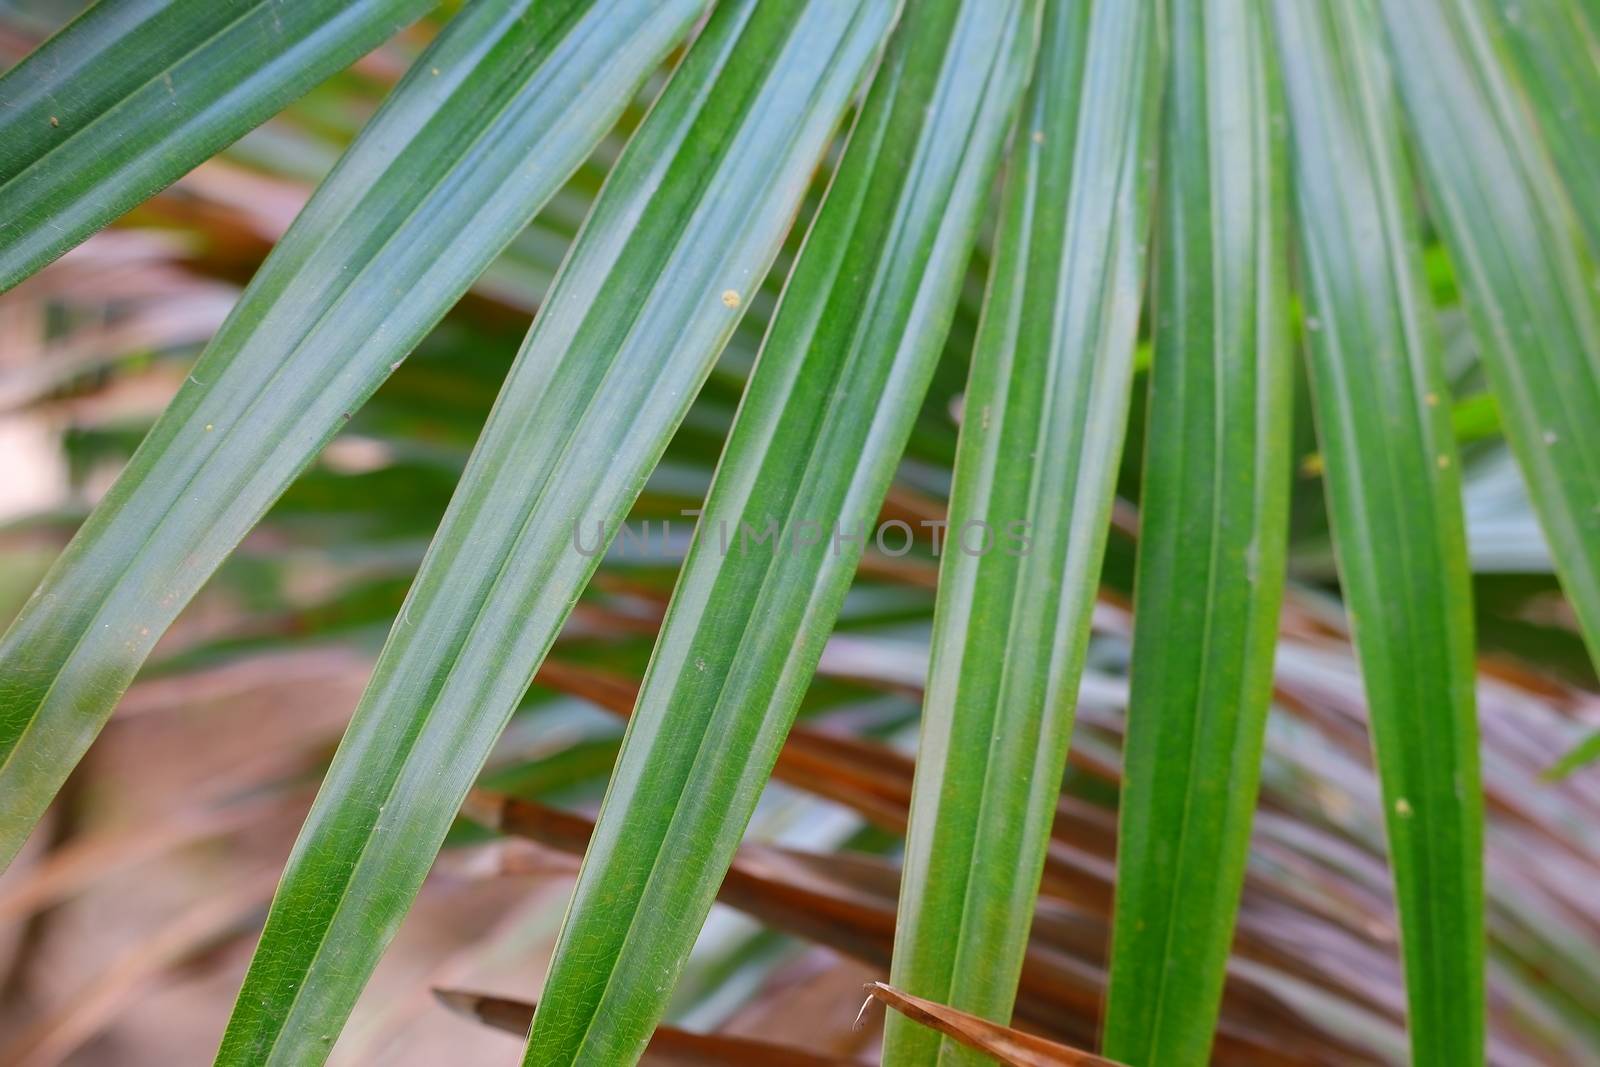 blurred palm leaf by 9500102400